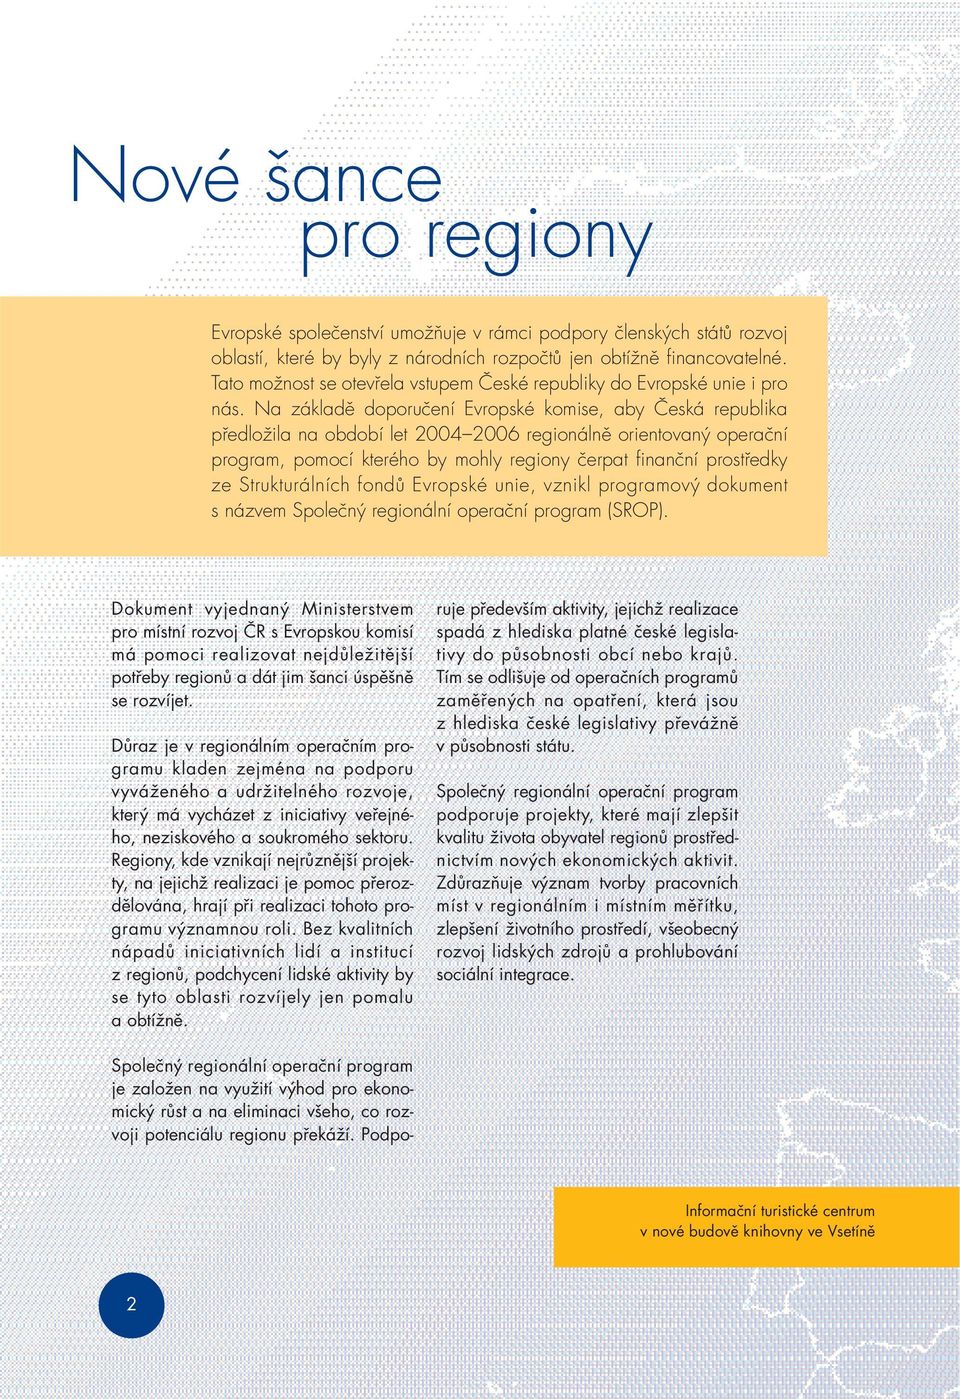 Na základě doporučení Evropské komise, aby Česká republika předložila na období let 2004 2006 regionálně orientovaný operační program, pomocí kterého by mohly regiony čerpat finanční prostředky ze